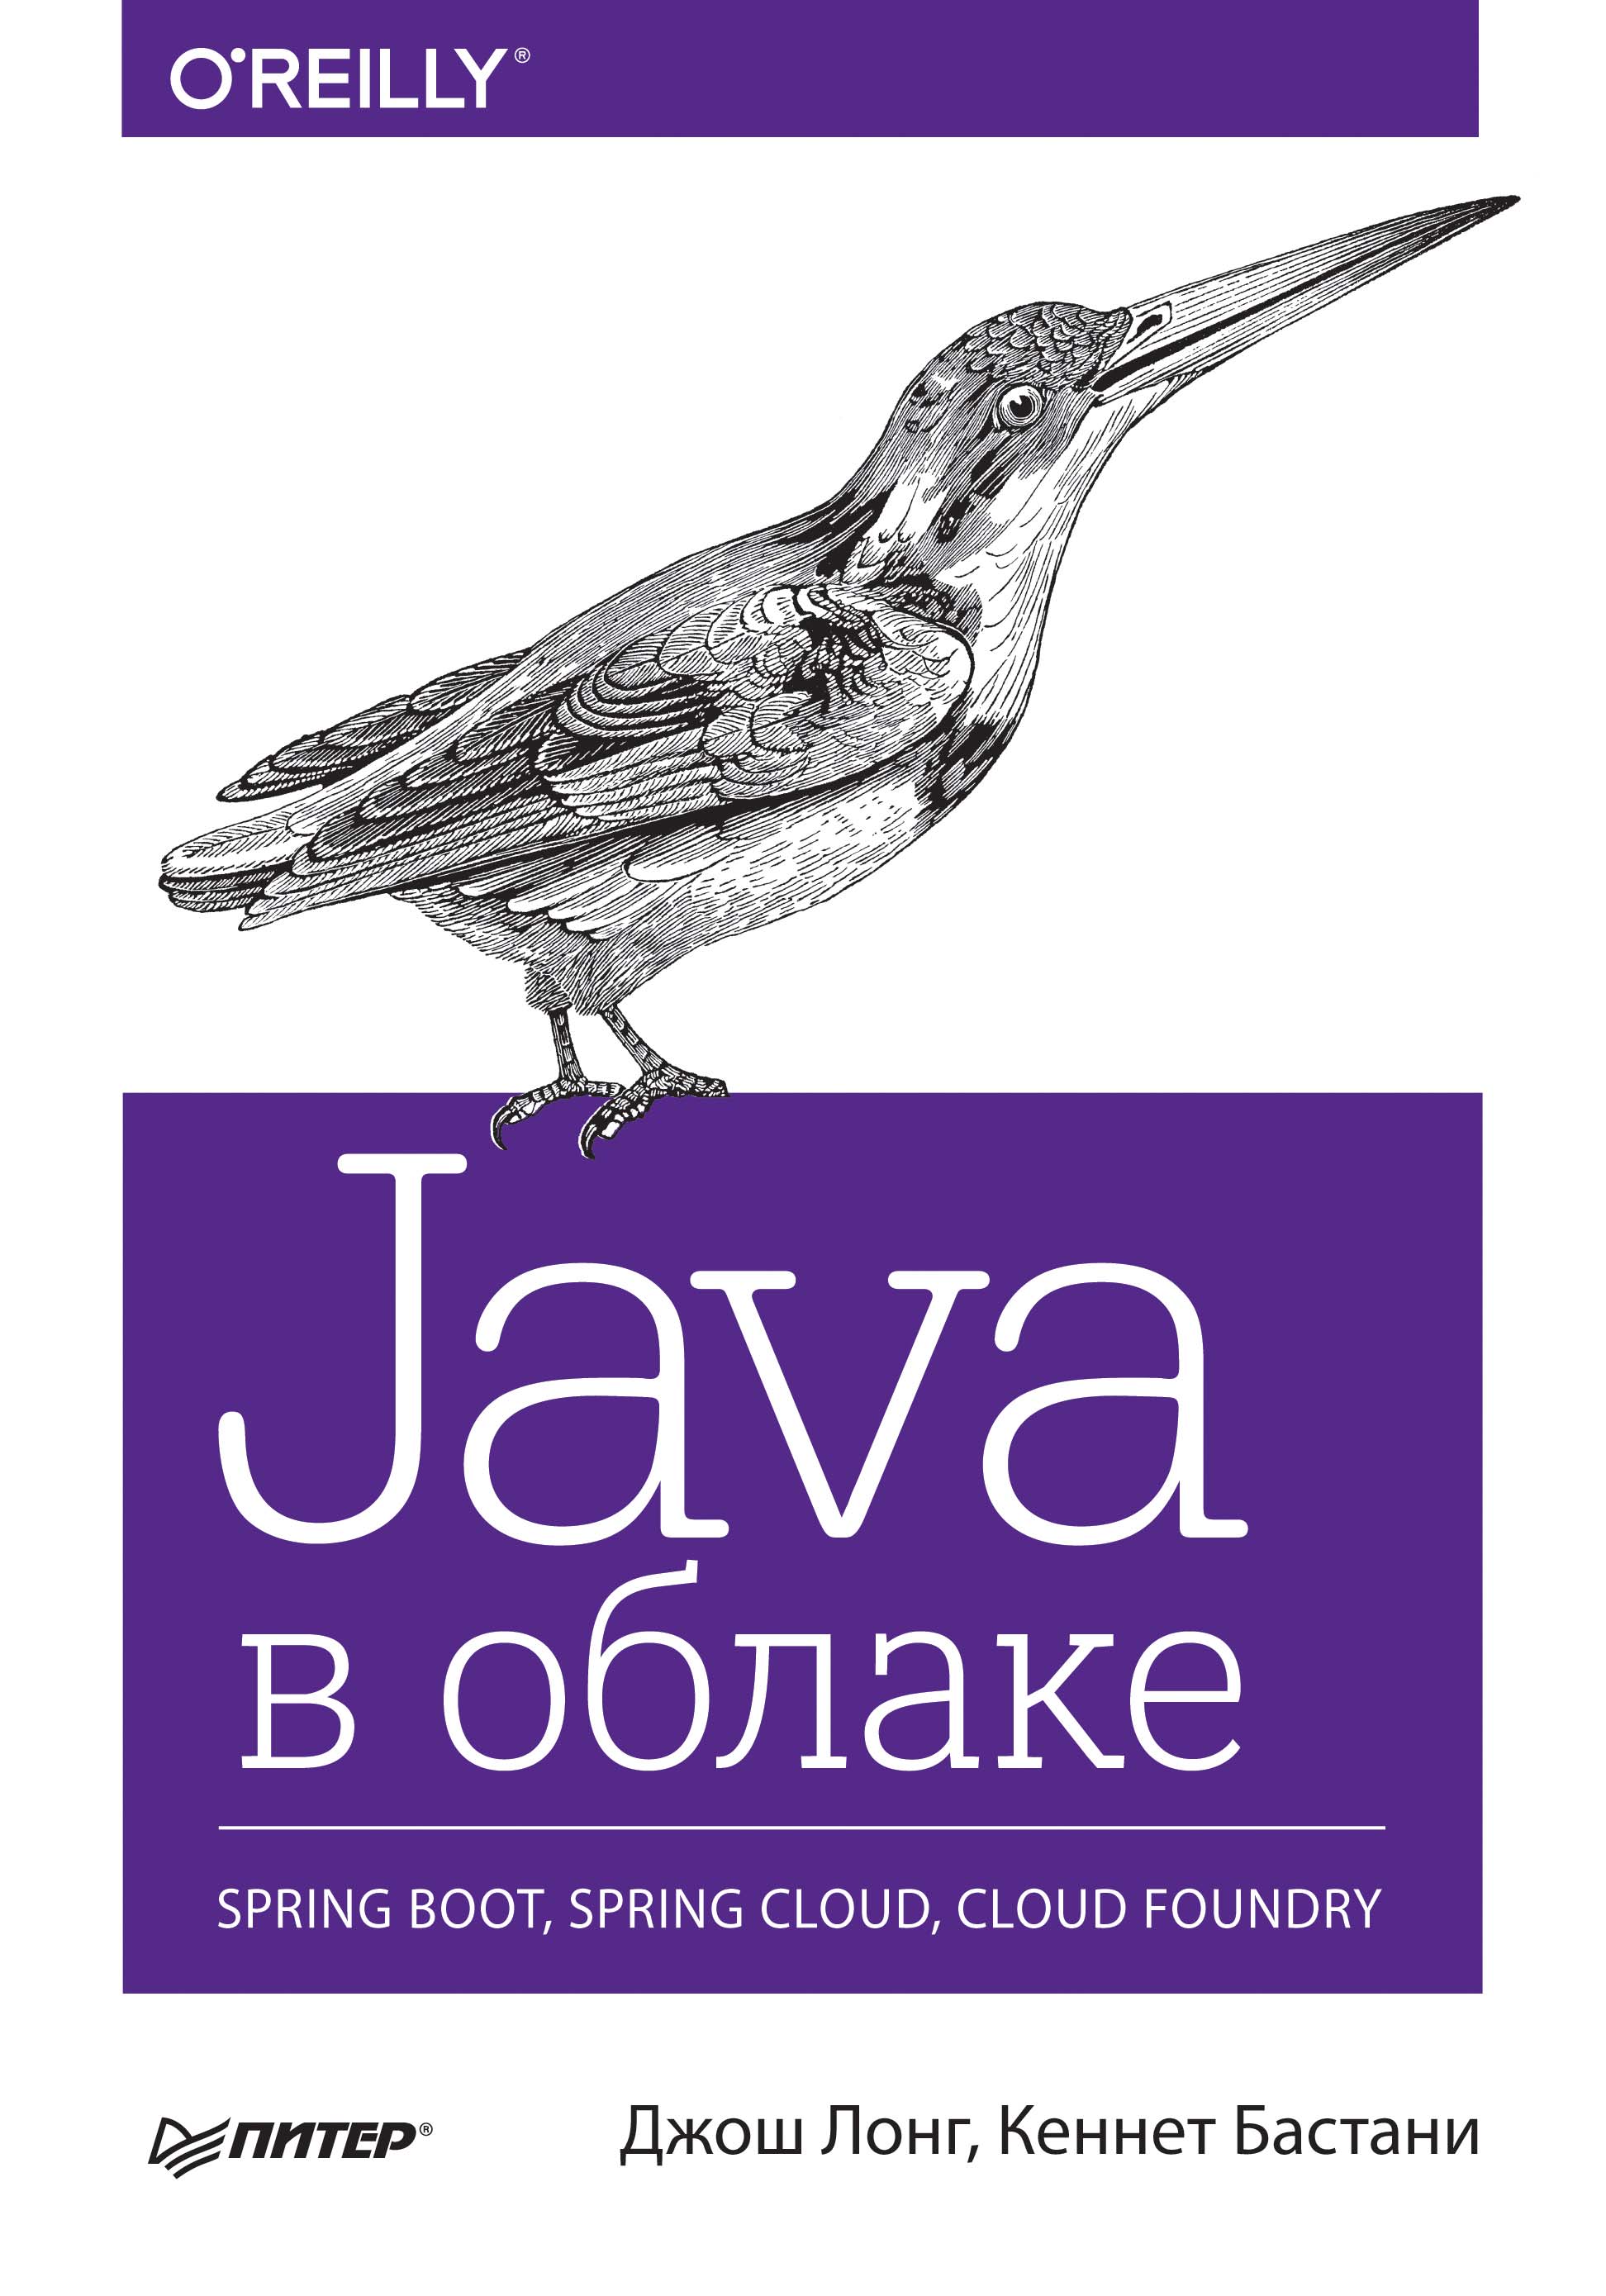 Книга Бестселлеры O’Reilly (Питер) Java в облаке. Spring Boot, Spring Cloud, Cloud Foundry (pdf+epub) созданная Джош Лонг, Кеннет Бастани, Н. Вильчинский может относится к жанру зарубежная компьютерная литература, ОС и сети, программирование. Стоимость электронной книги Java в облаке. Spring Boot, Spring Cloud, Cloud Foundry (pdf+epub) с идентификатором 42225630 составляет 599.00 руб.